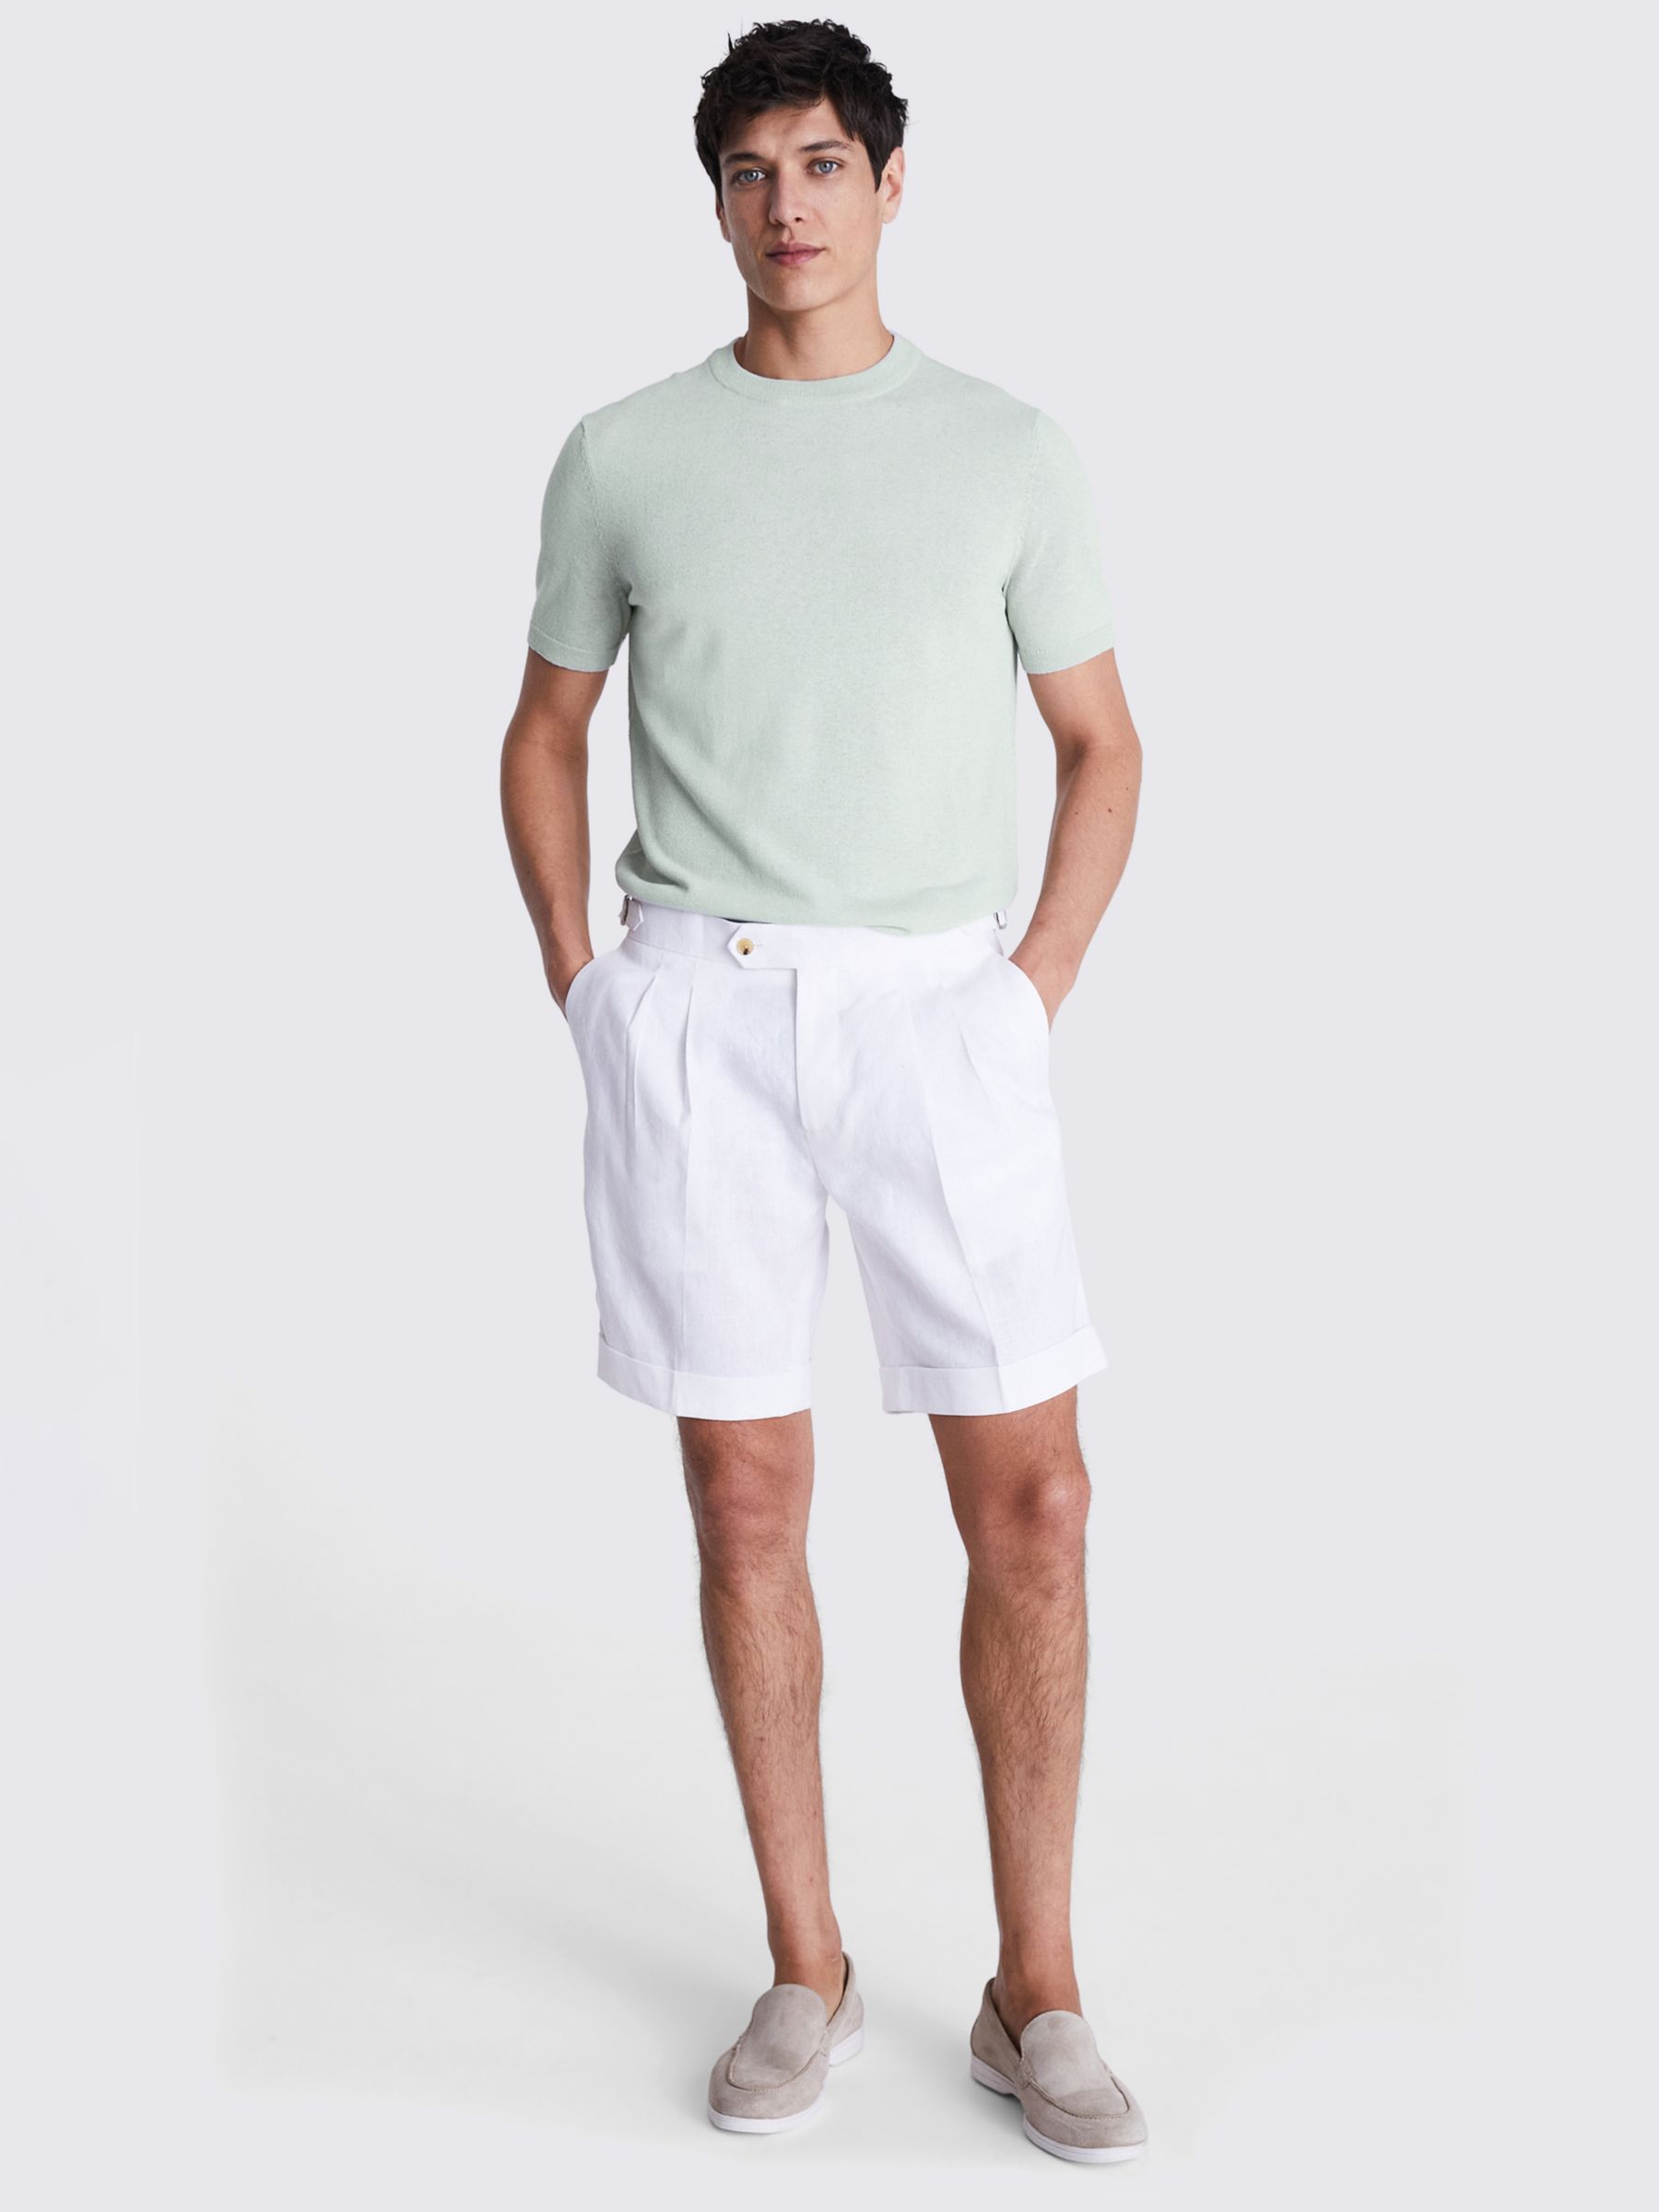 Moss Linen Blend T-Shirt, Green, XXL